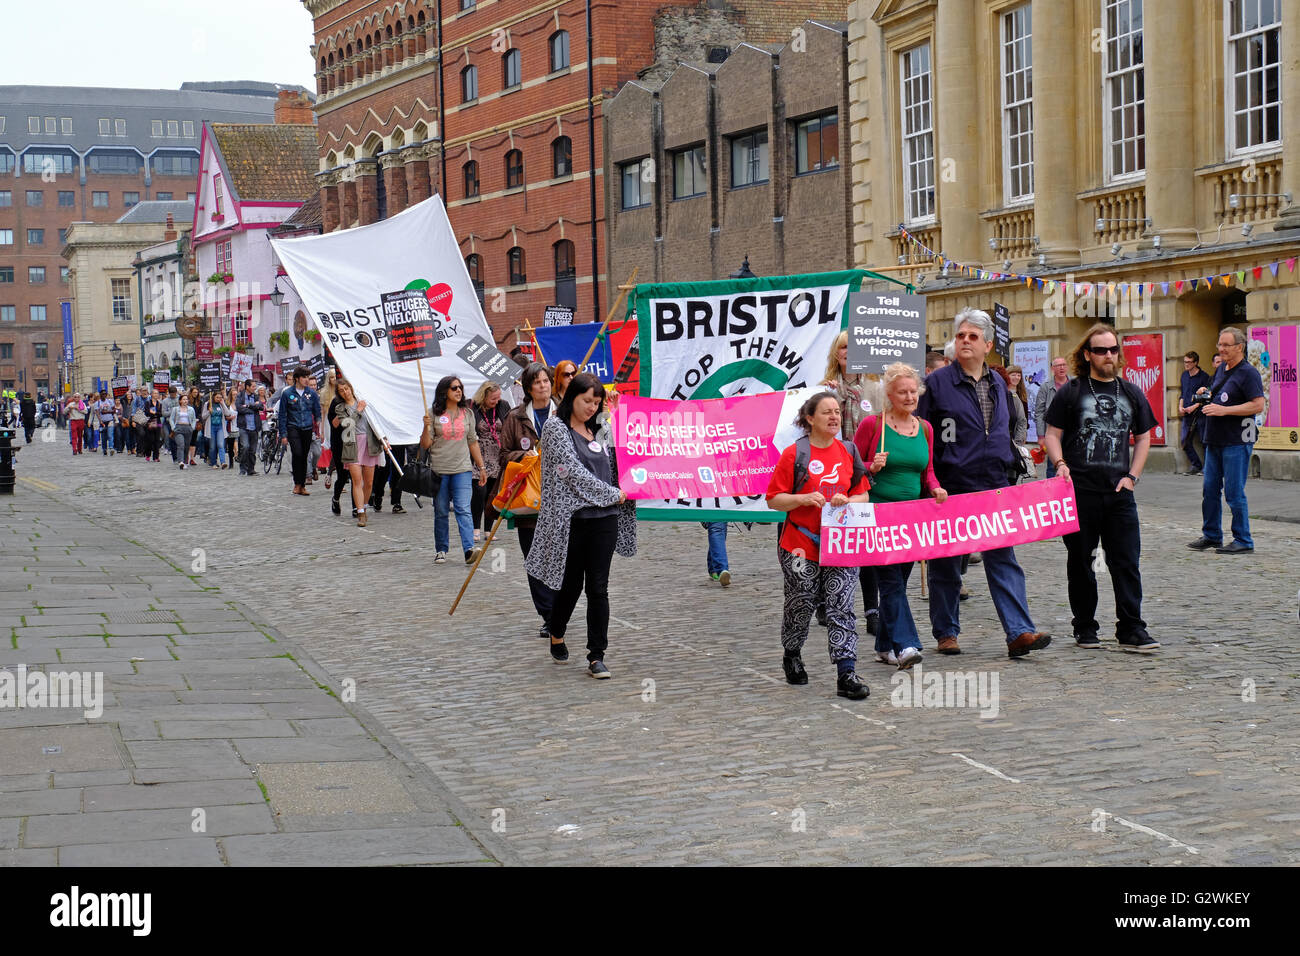 Bristol, Royaume-Uni. 4 juin, 2016. Manifestants à une démonstration ici Bienvenue réfugiés dans les rues de Bristol. La manifestation était organisée pour protester contre les politiques du gouvernement britannique à l'égard des réfugiés. Banque D'Images